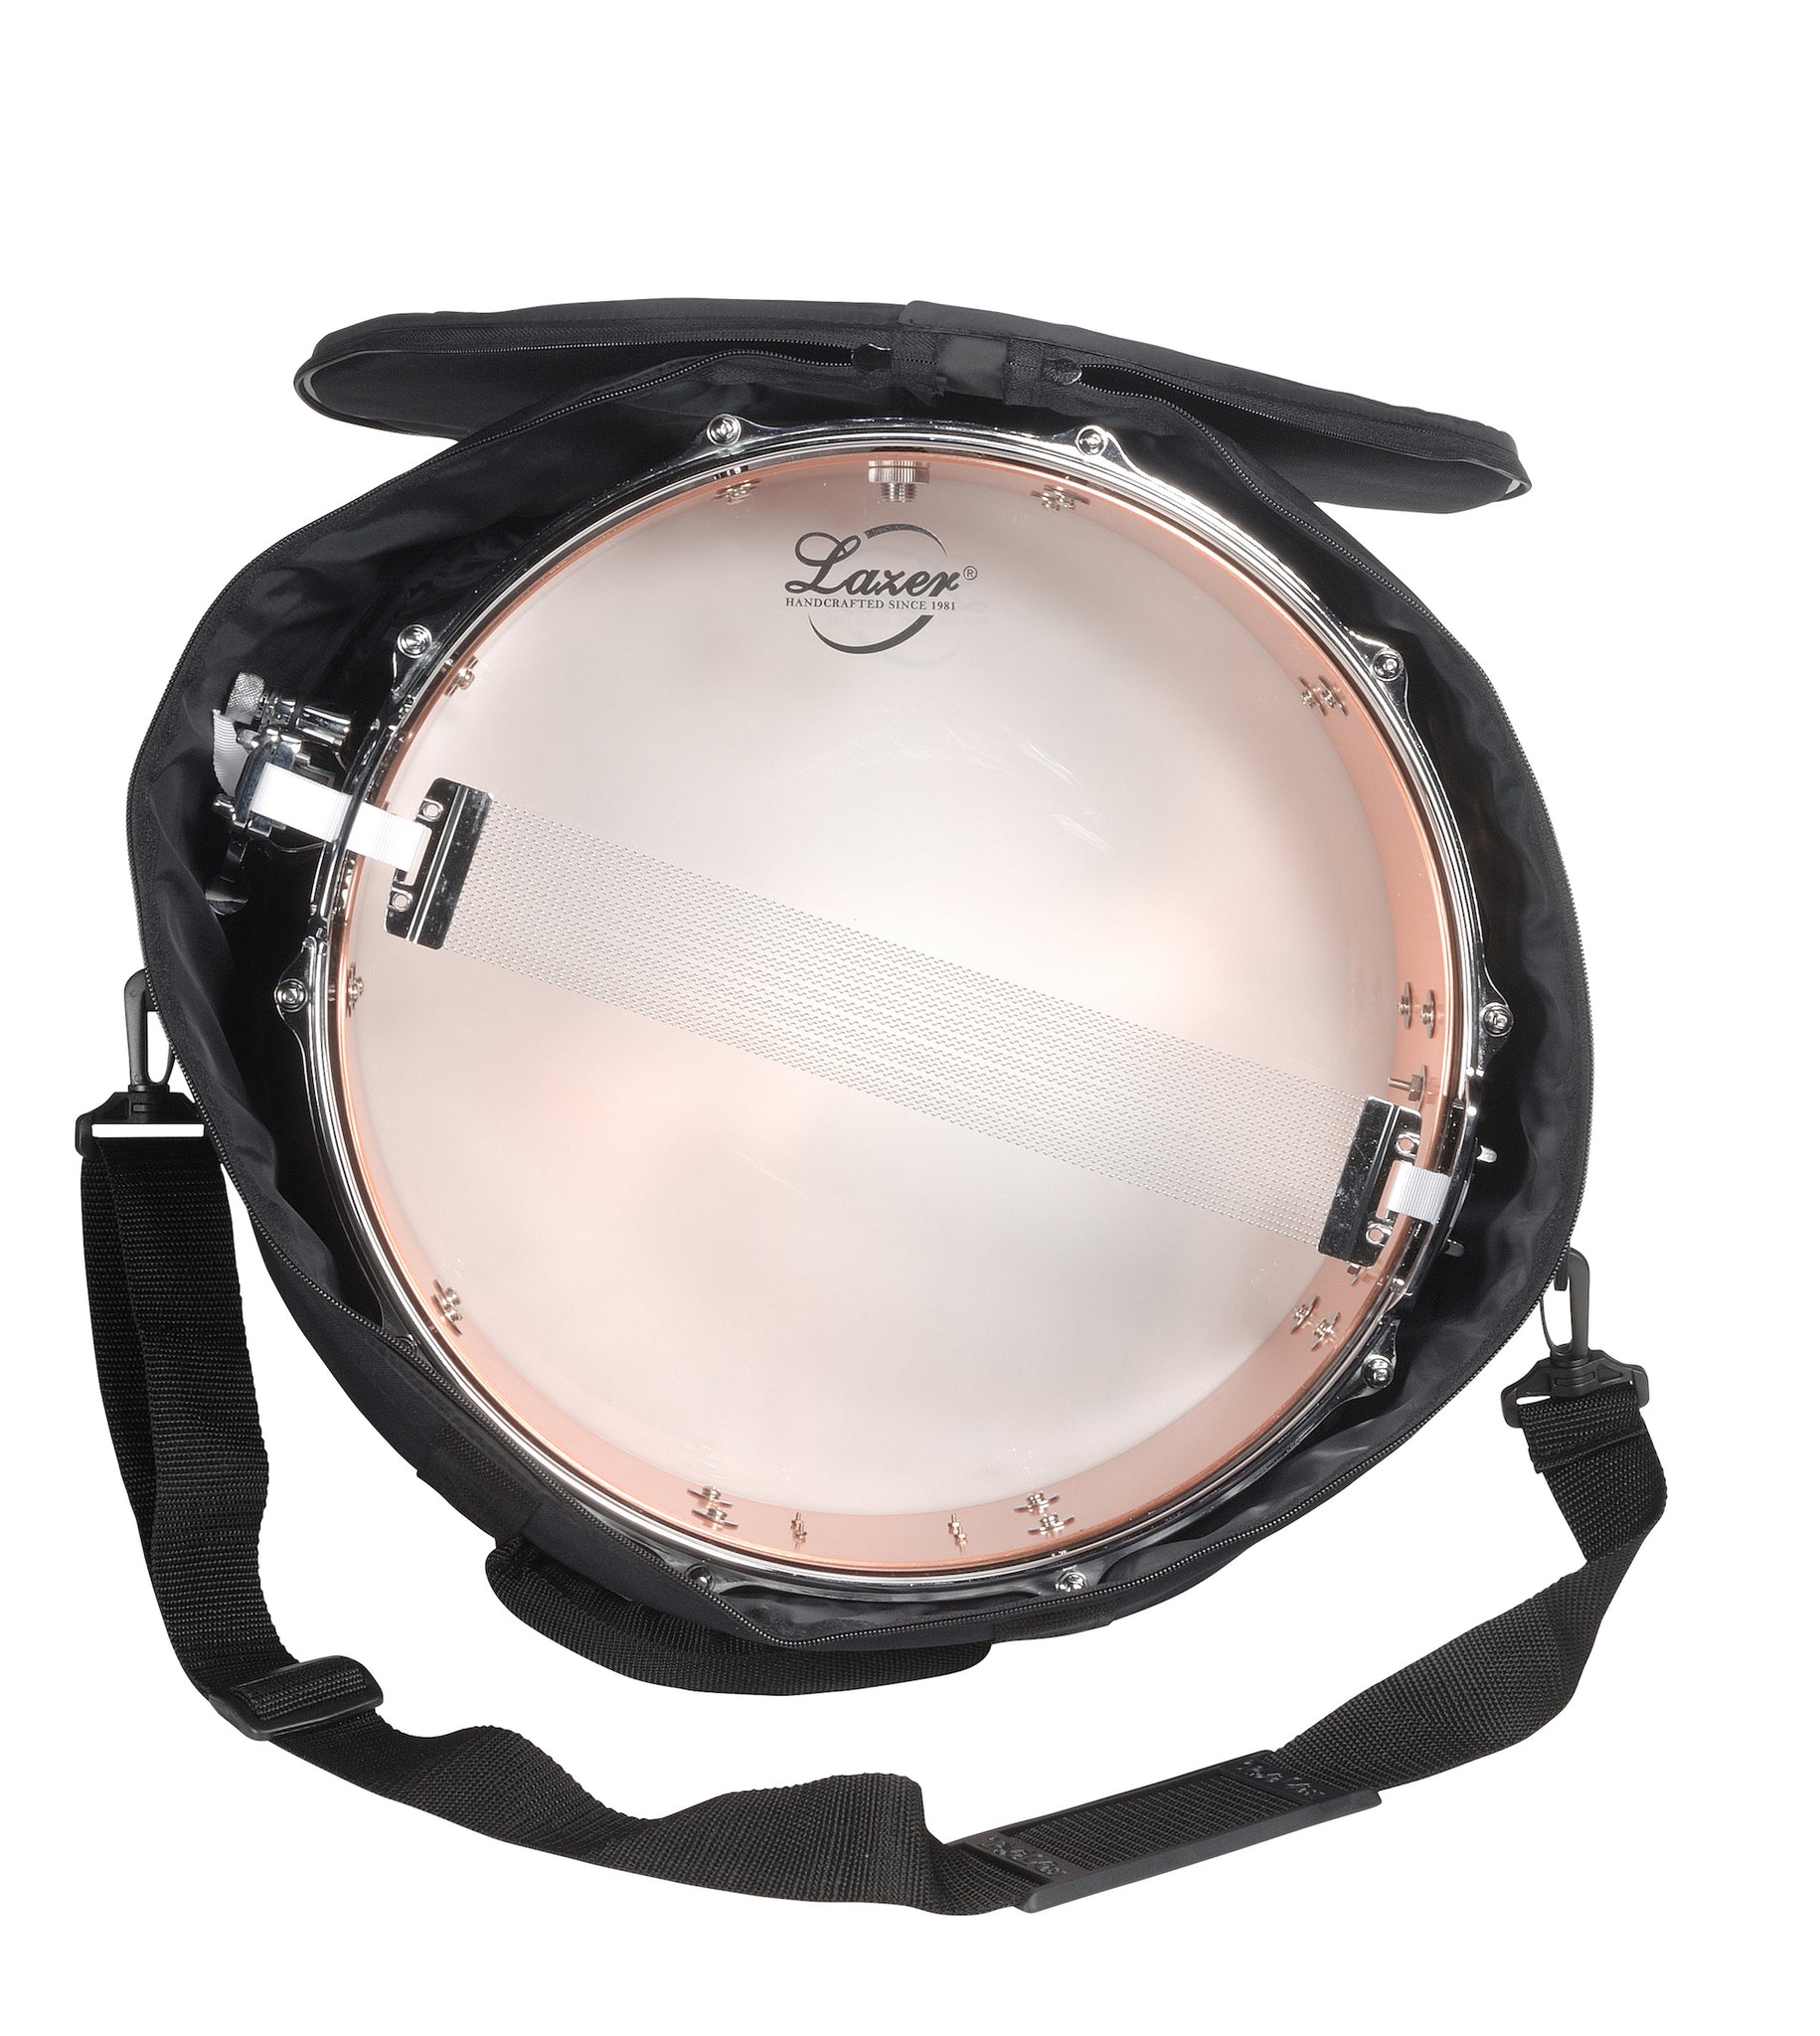 Bintangor Snare Drum (SD-08)